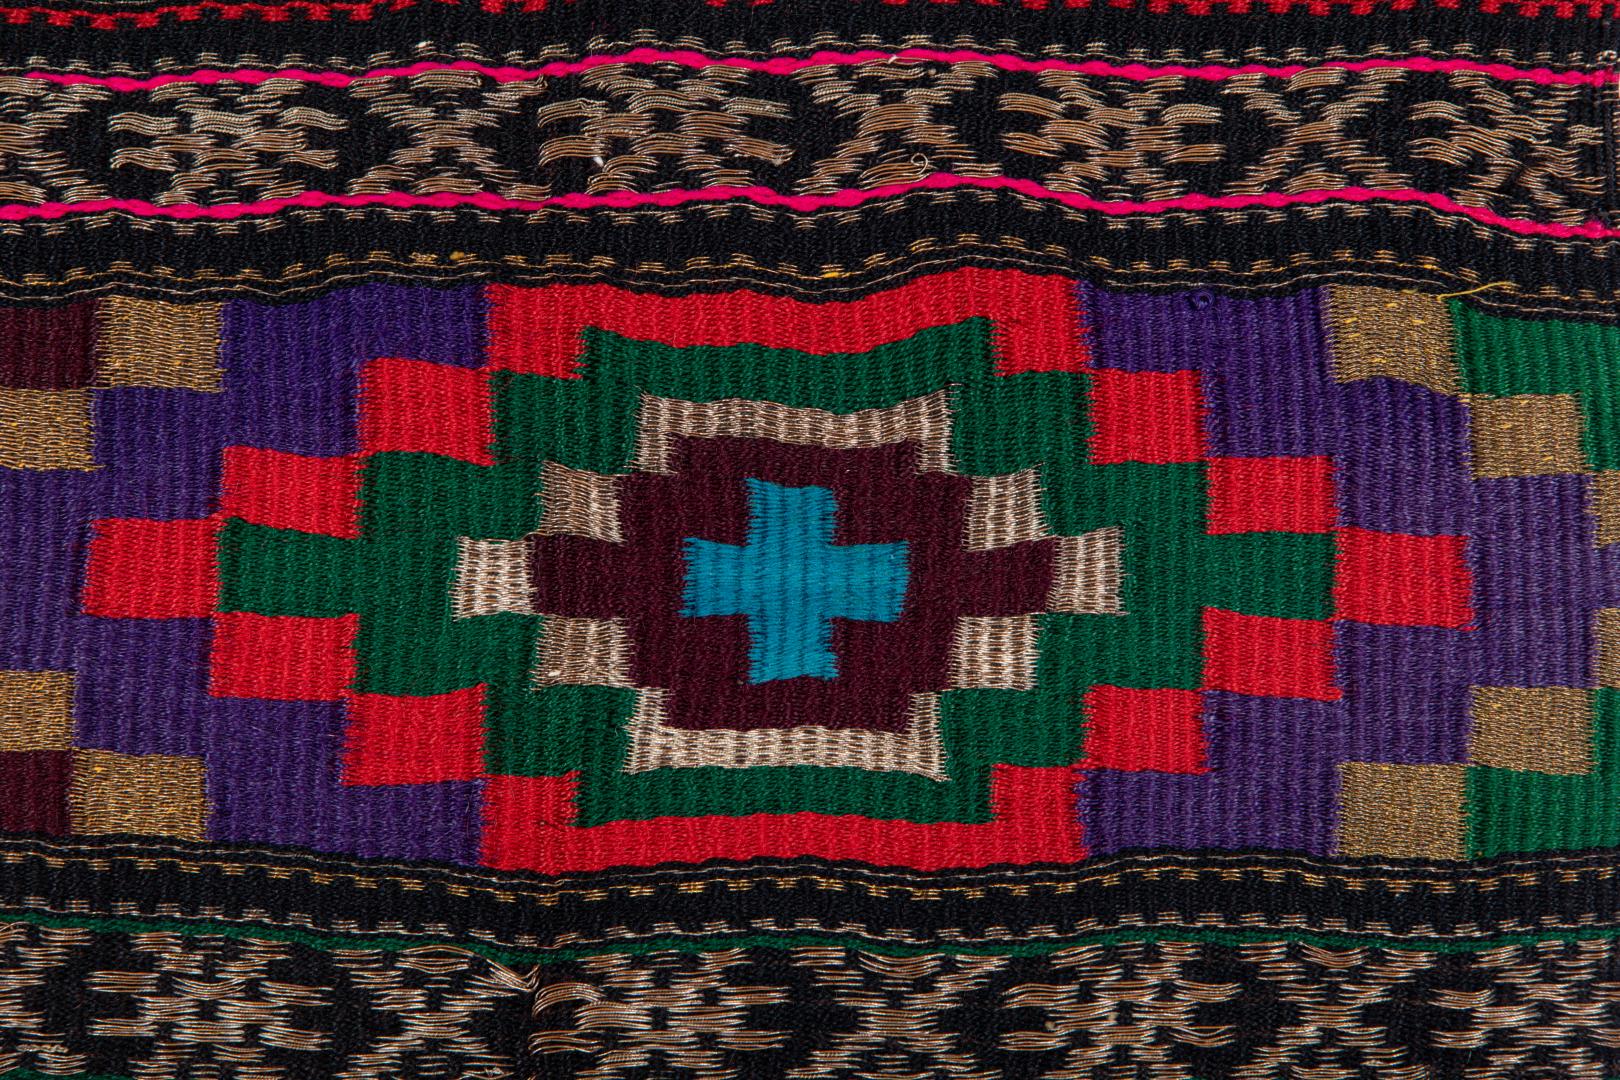 Zapaska (apron) with star-shaped trim